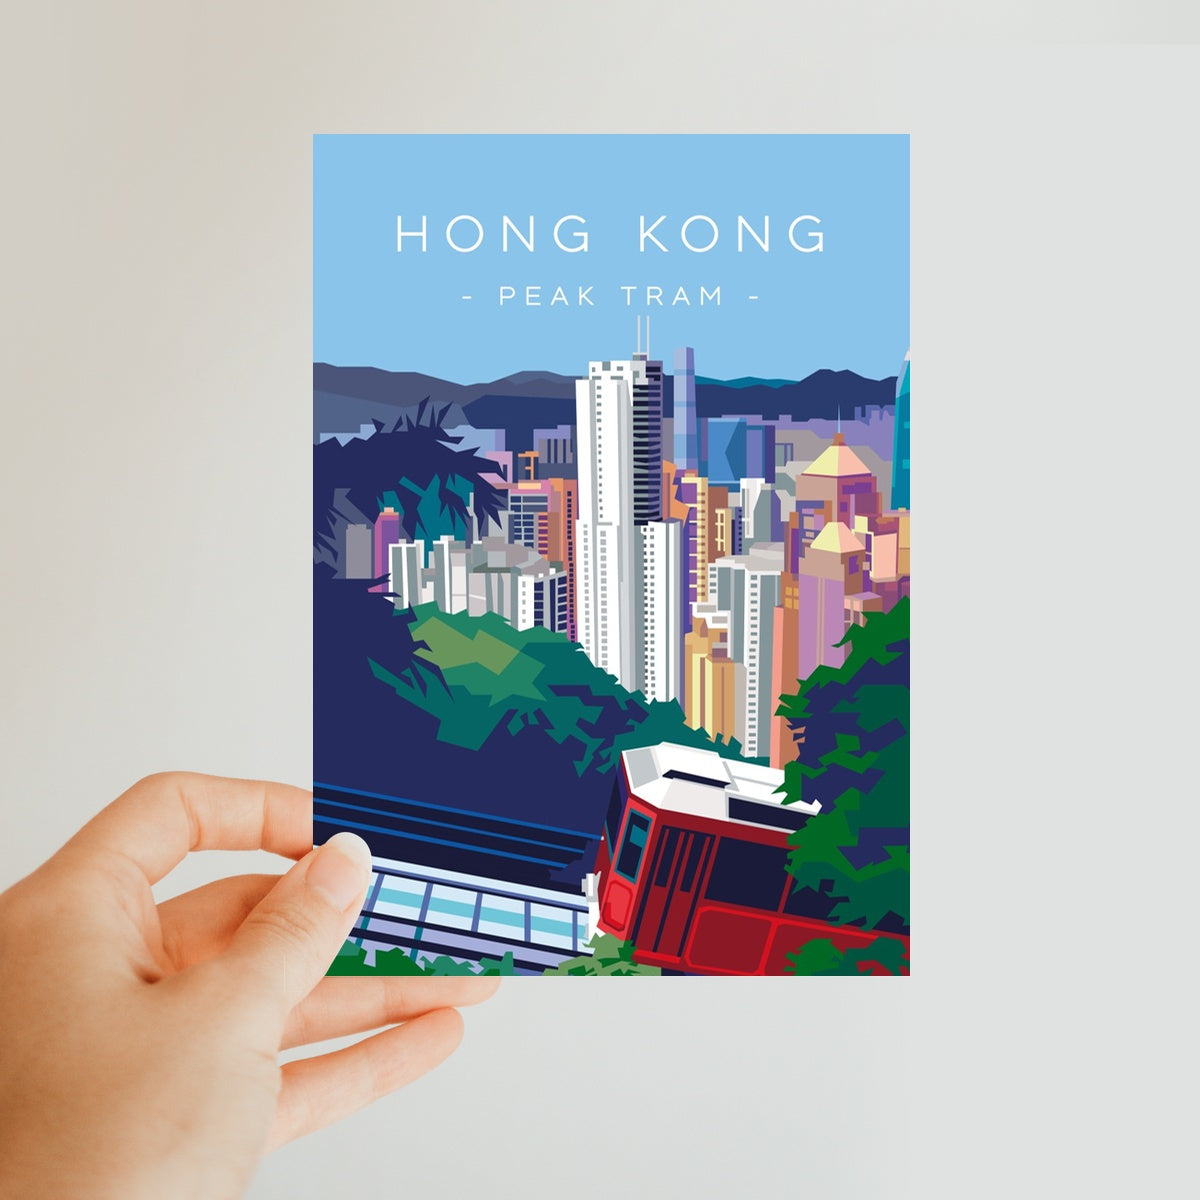 Hong Kong Travel - Peak Tram Classic Postcard